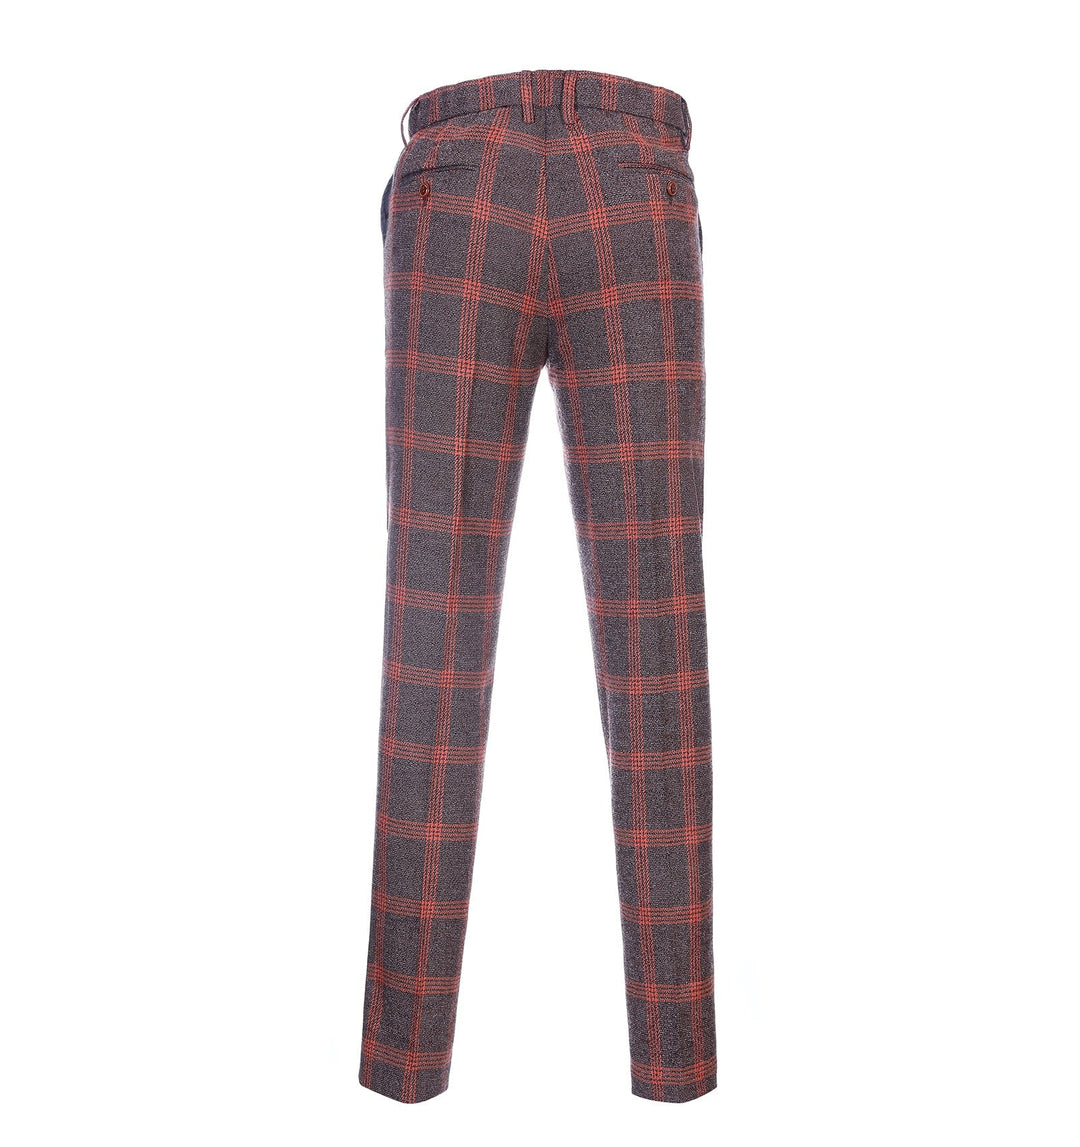 Men's Casual Suit Pants Burgundy Plaid Pleat-Front Trousers menseventwear